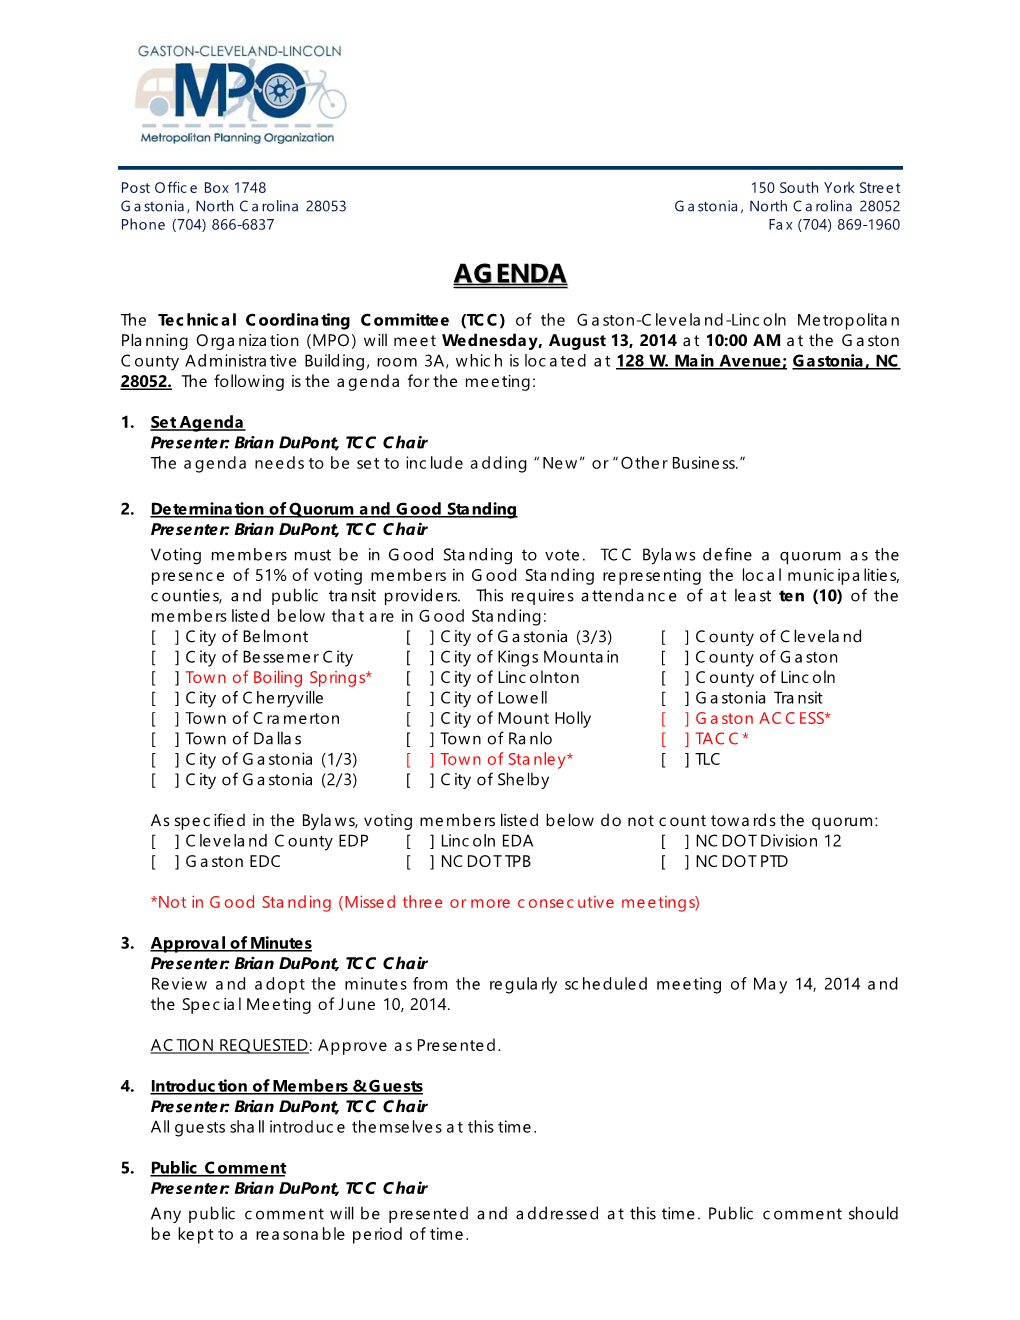 TCC Agenda 8-13-2014